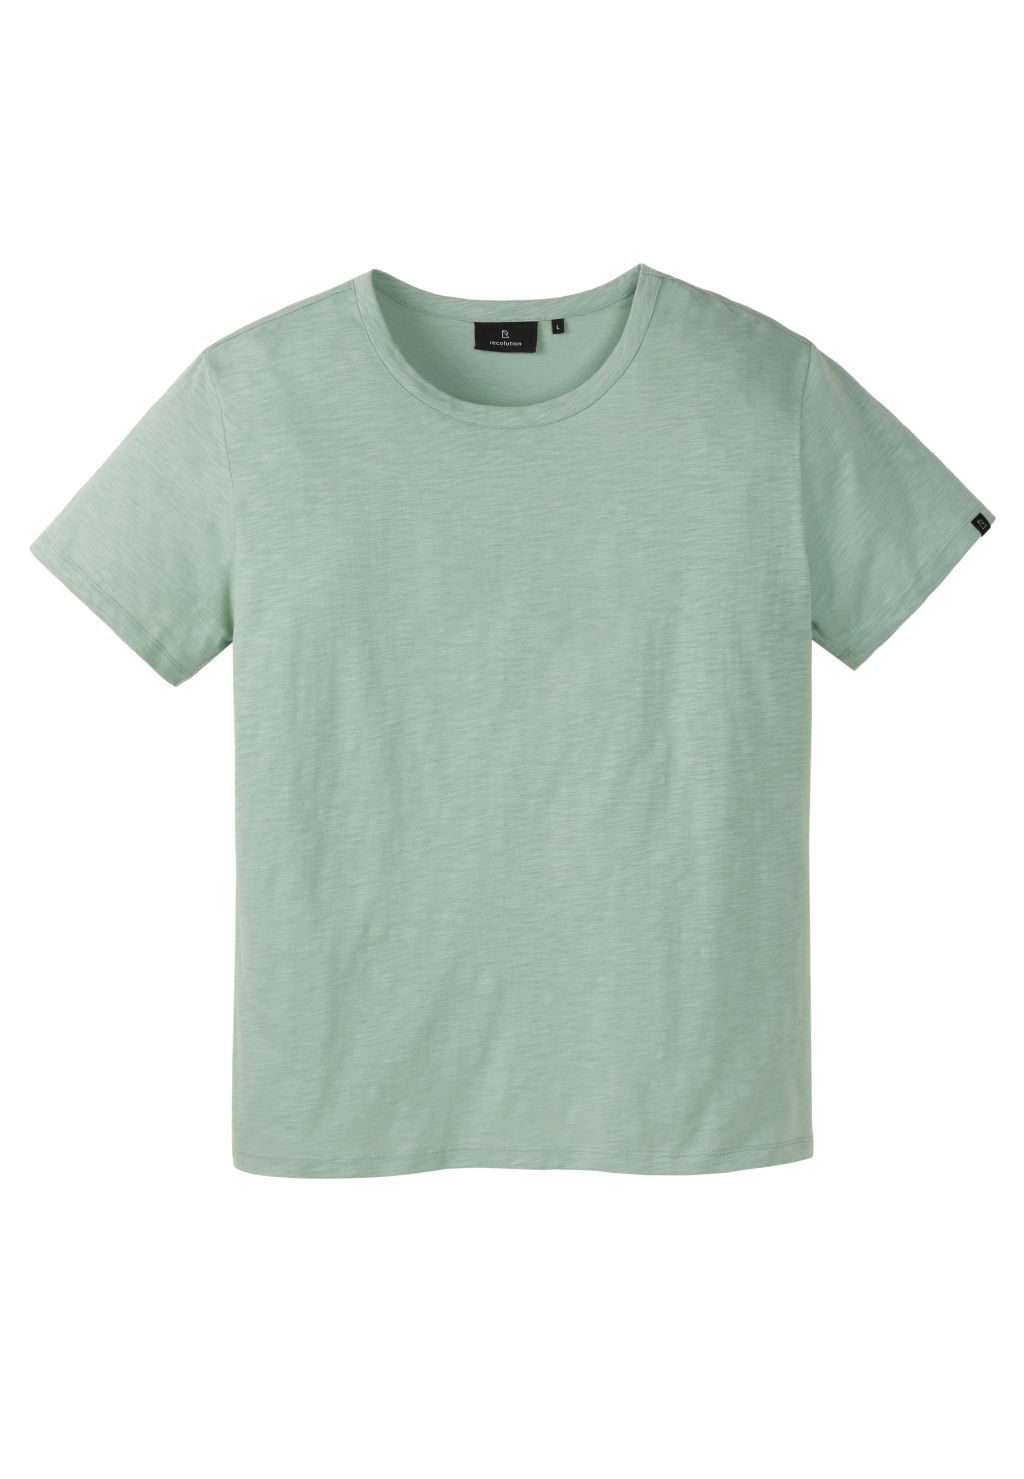 T-Shirt BAY aus Bio-Baumwolle  cucumber green M